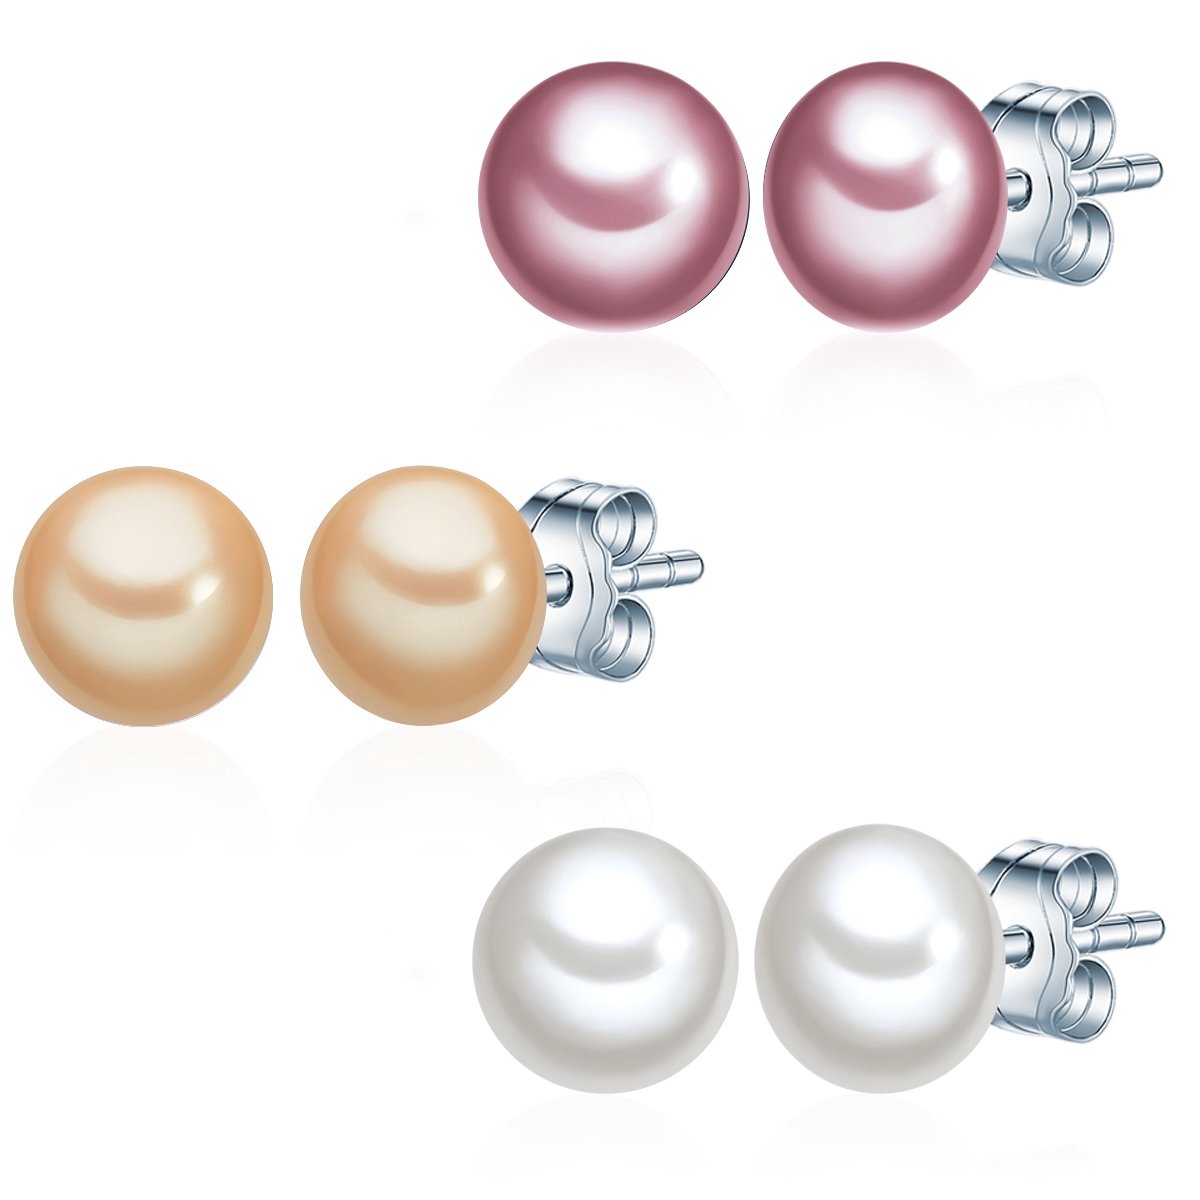 Valero Pearls Dames sieraden set 925 zilveren zoet water parel One Size Rose, Geel, Wit 32018596